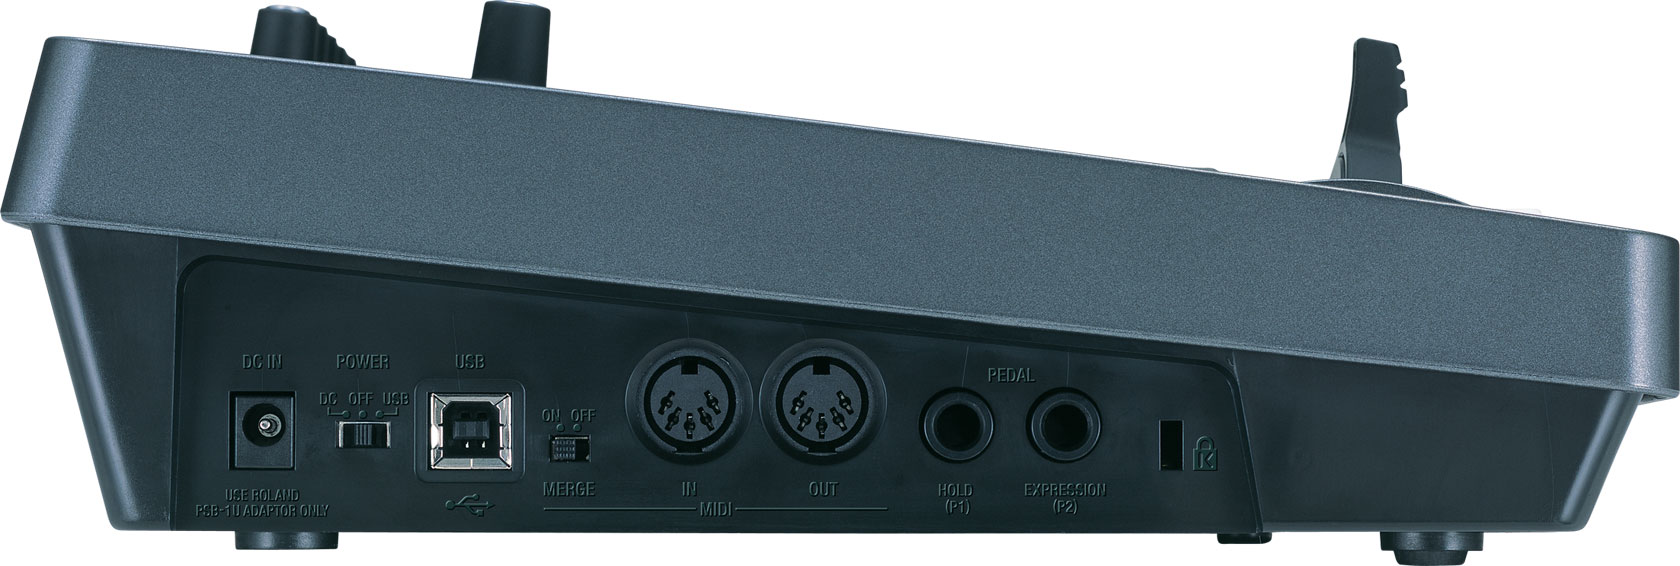 Roland - PCR-300 | USB MIDI Keyboard Controller